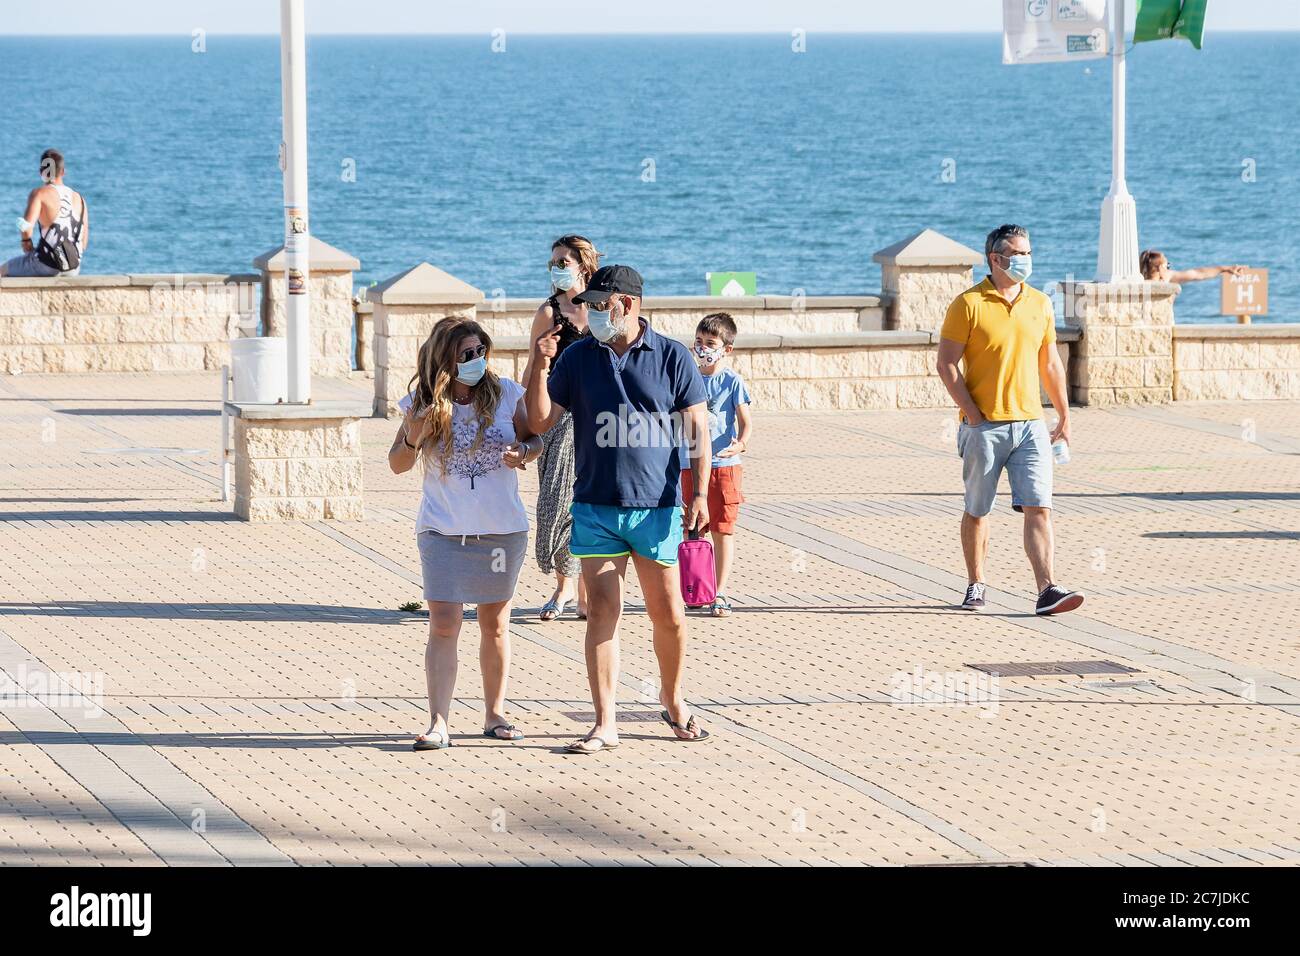 Huelva, Spagna - 3 giugno 2020: Persone che camminano dalla passeggiata Islantilla indossare maschera protettiva a causa di covid-19. Foto Stock